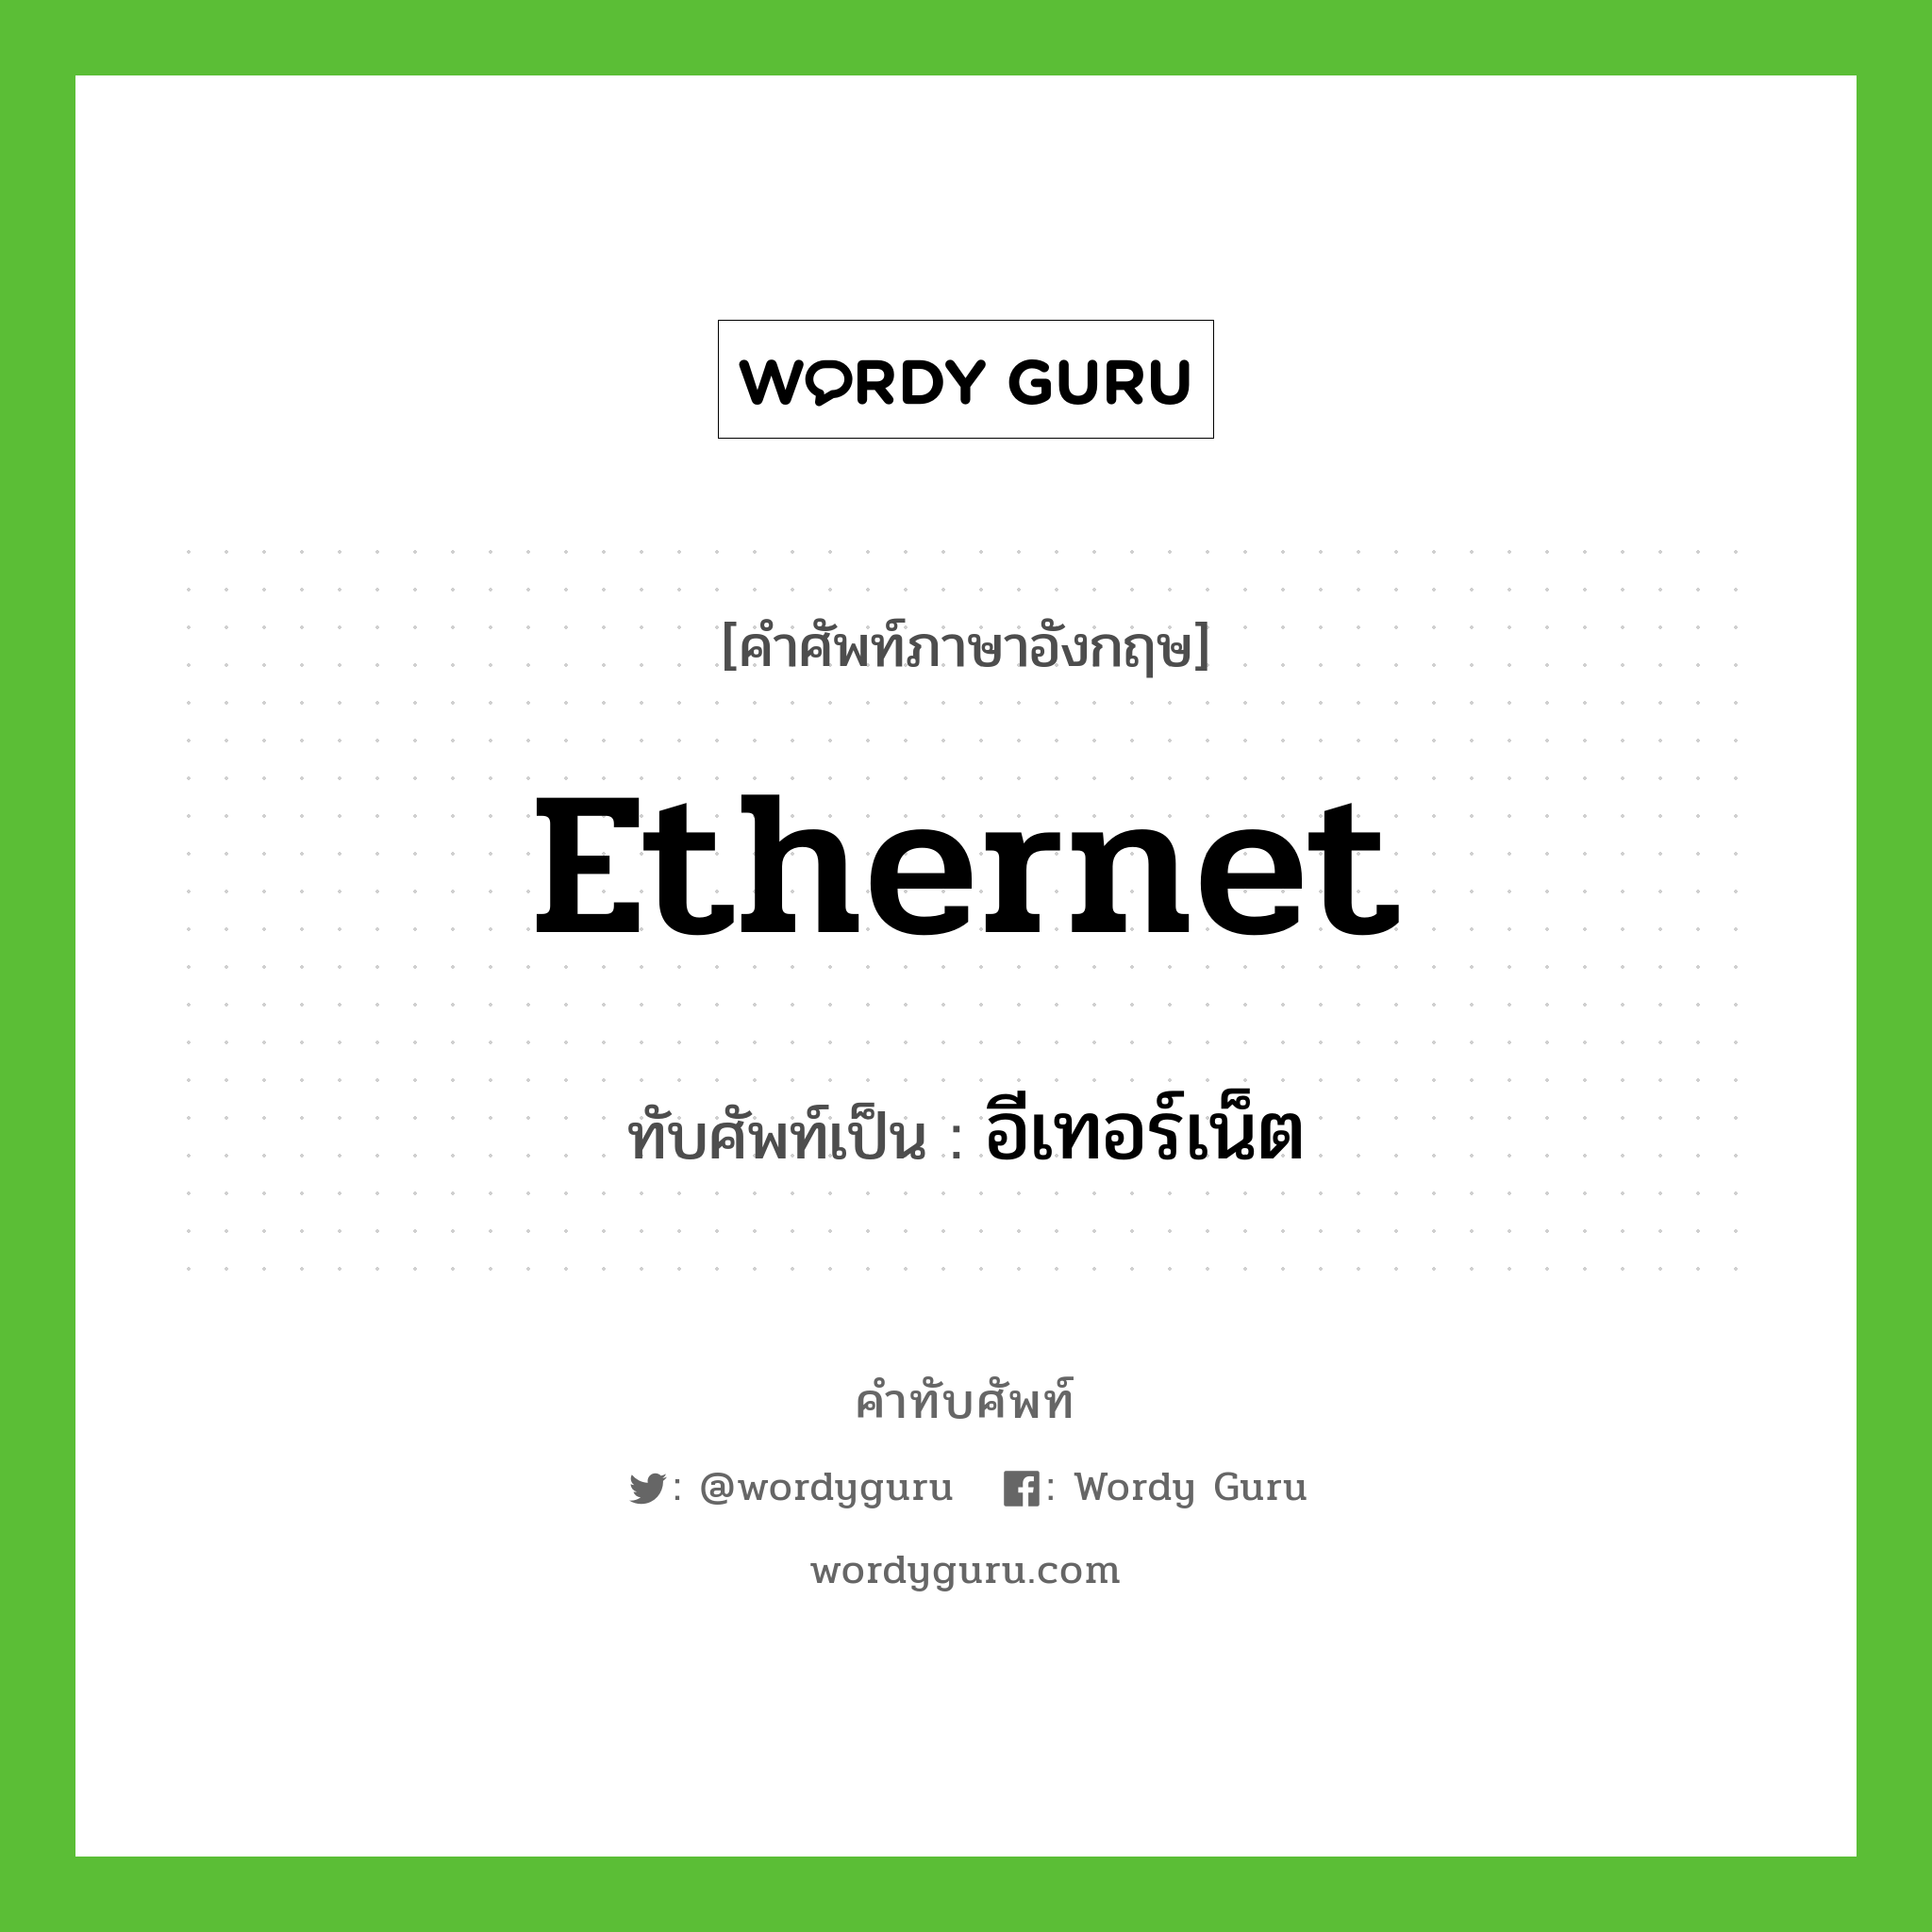 อีเทอร์เน็ต เขียนอย่างไร?, คำศัพท์ภาษาอังกฤษ อีเทอร์เน็ต ทับศัพท์เป็น Ethernet